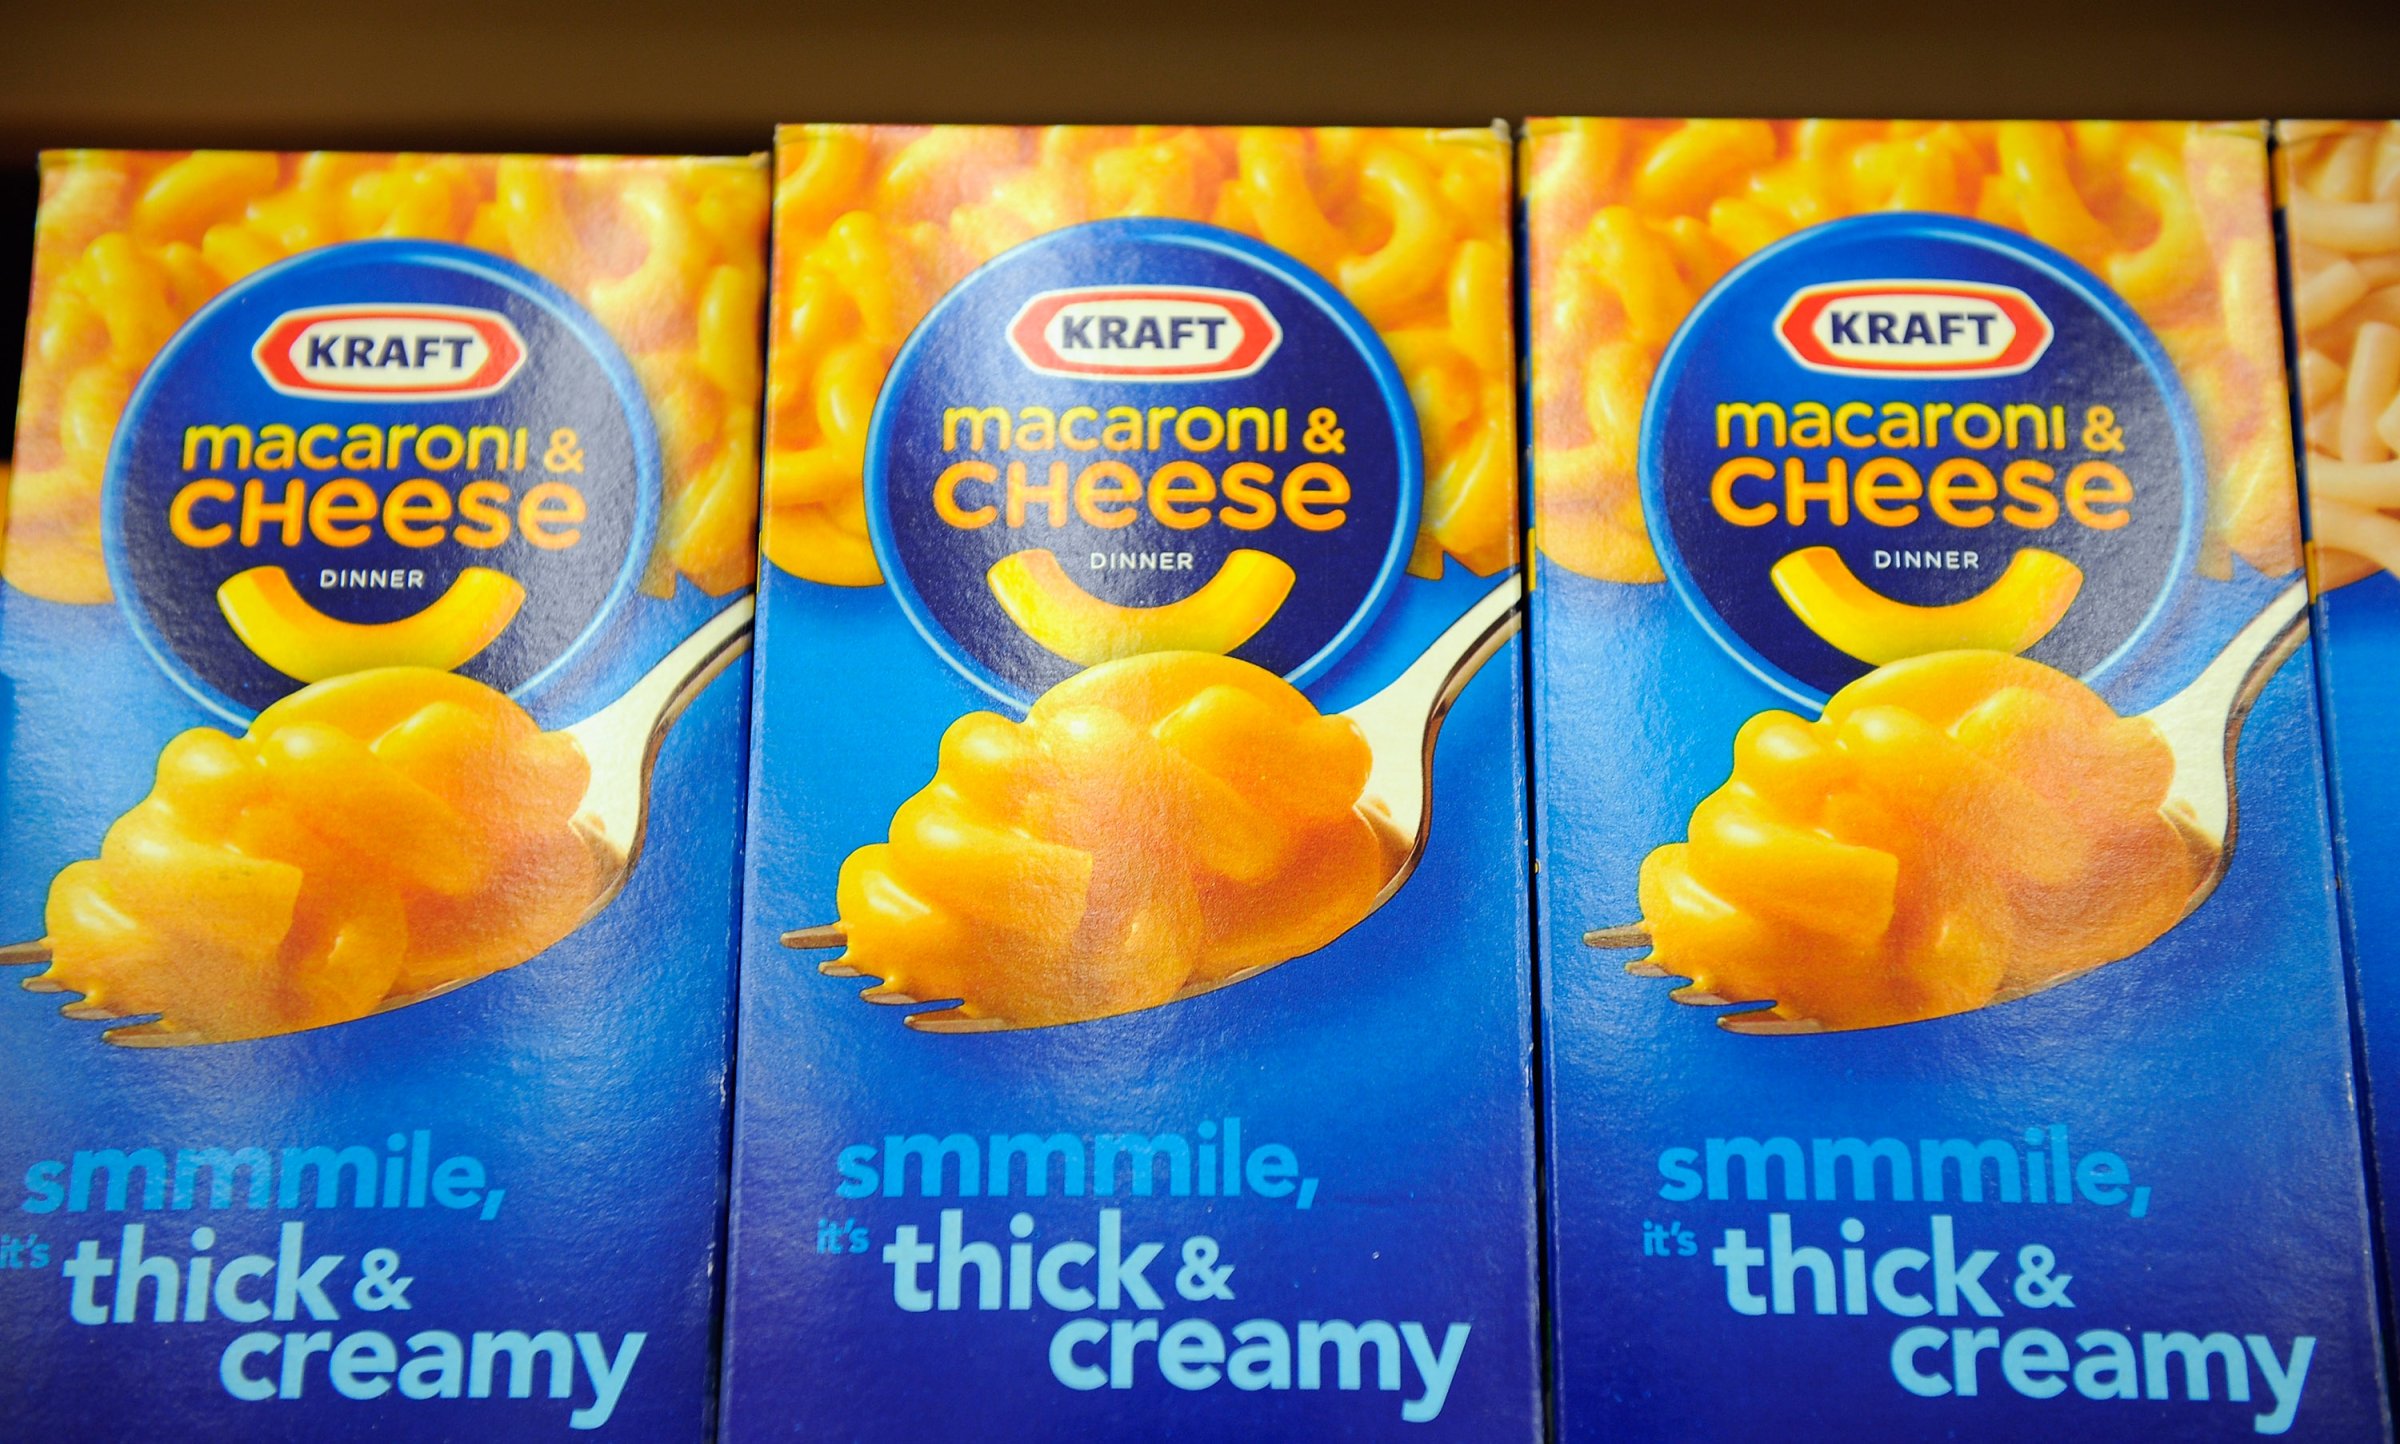 Boxes of Kraft Macaroni & Cheese.